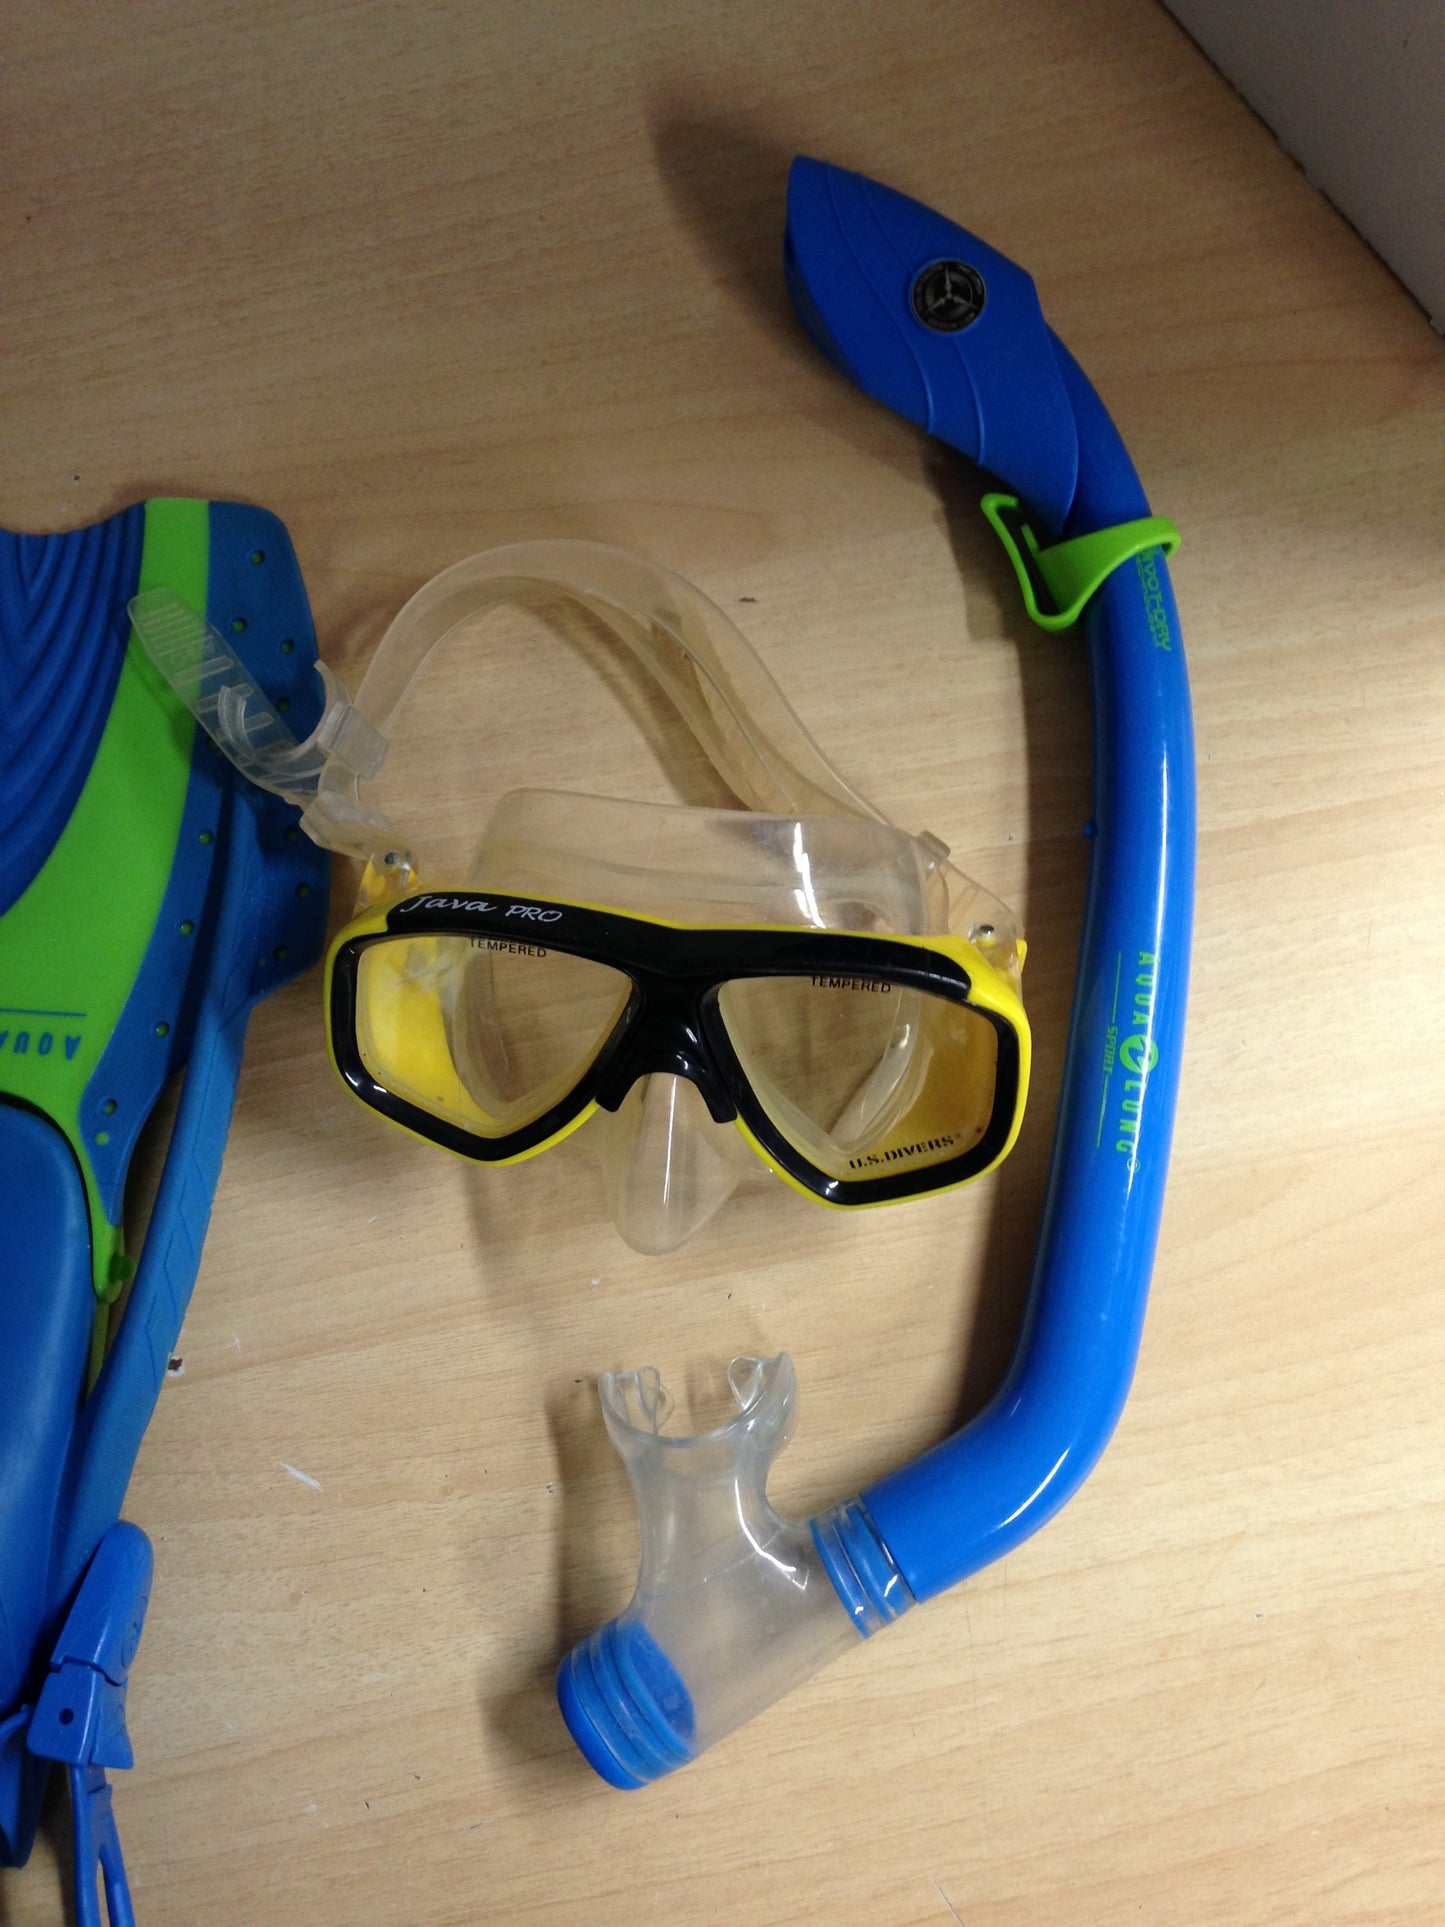 Snorkel Dive Fins Child Shoe Size 1-3 Aqua Lung Blue Lime Some Wear